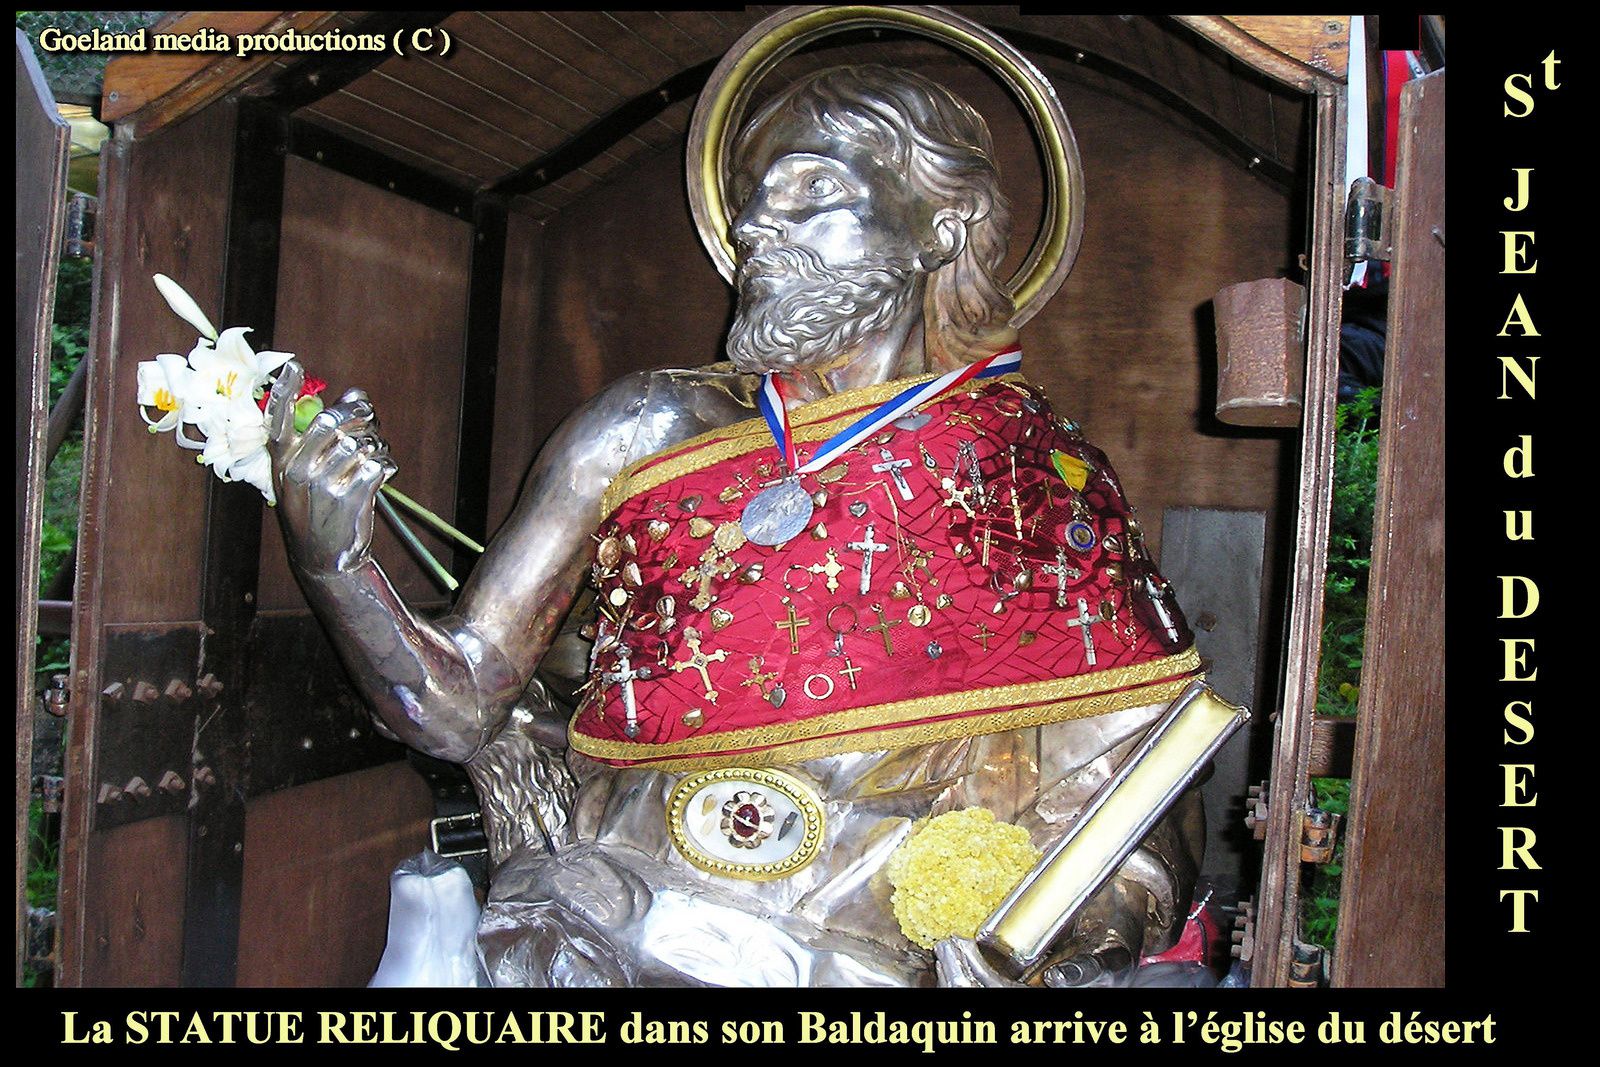 Reliquaire de St JEAN BAPTISTE pélerinage d' ENTREVAUX ( PACA - Alpes de Haute Provence )